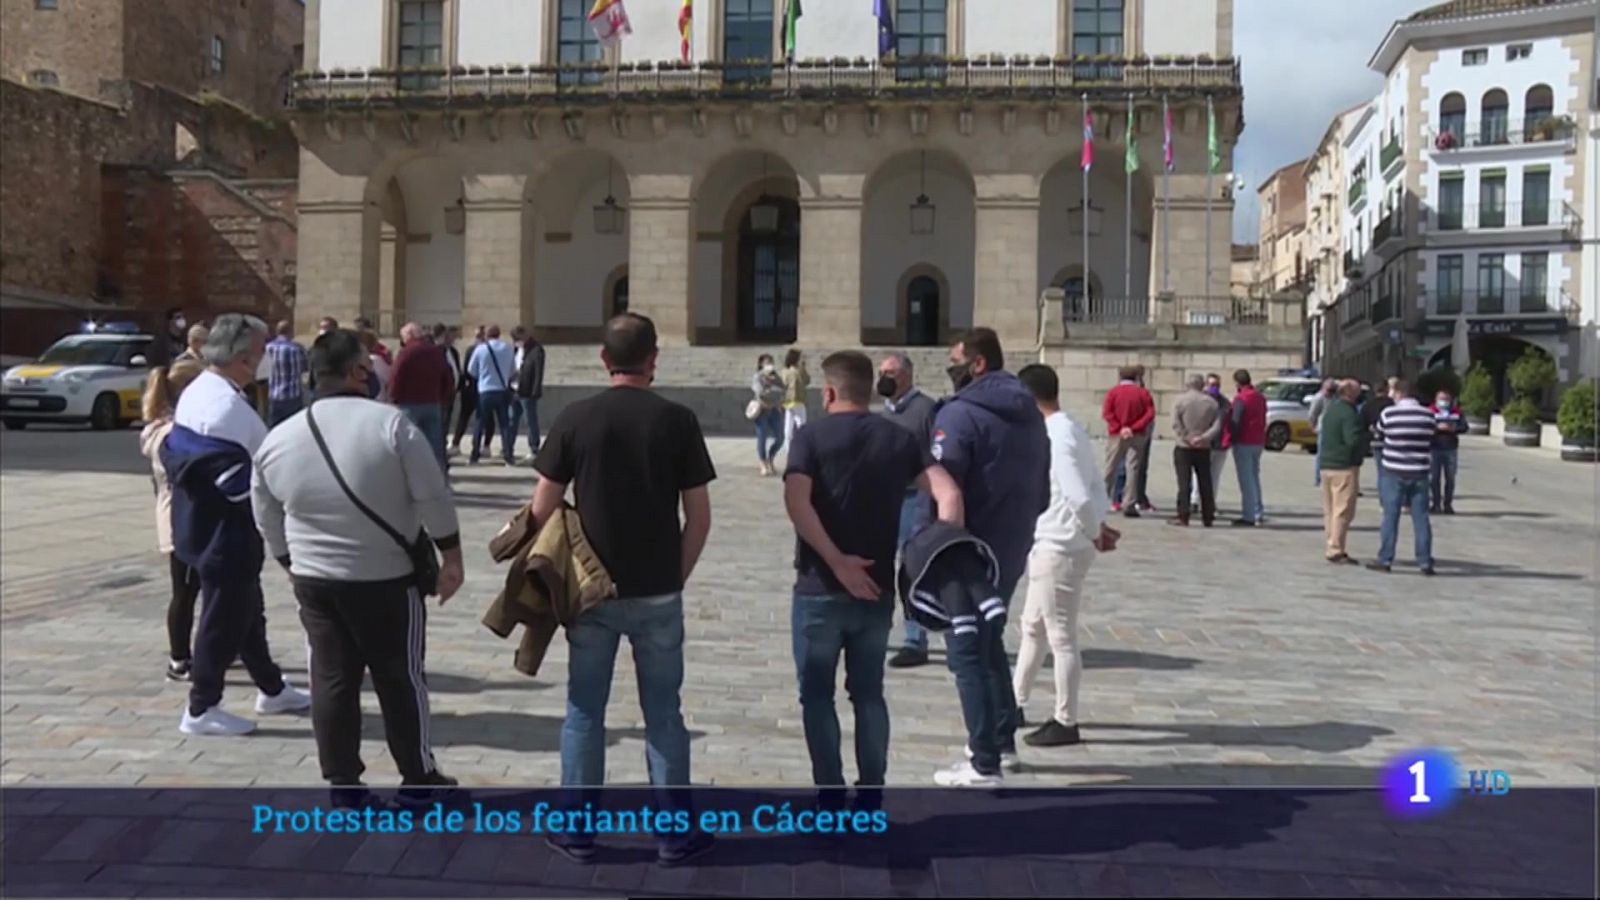 Protestas de los feriantes en Cáceres